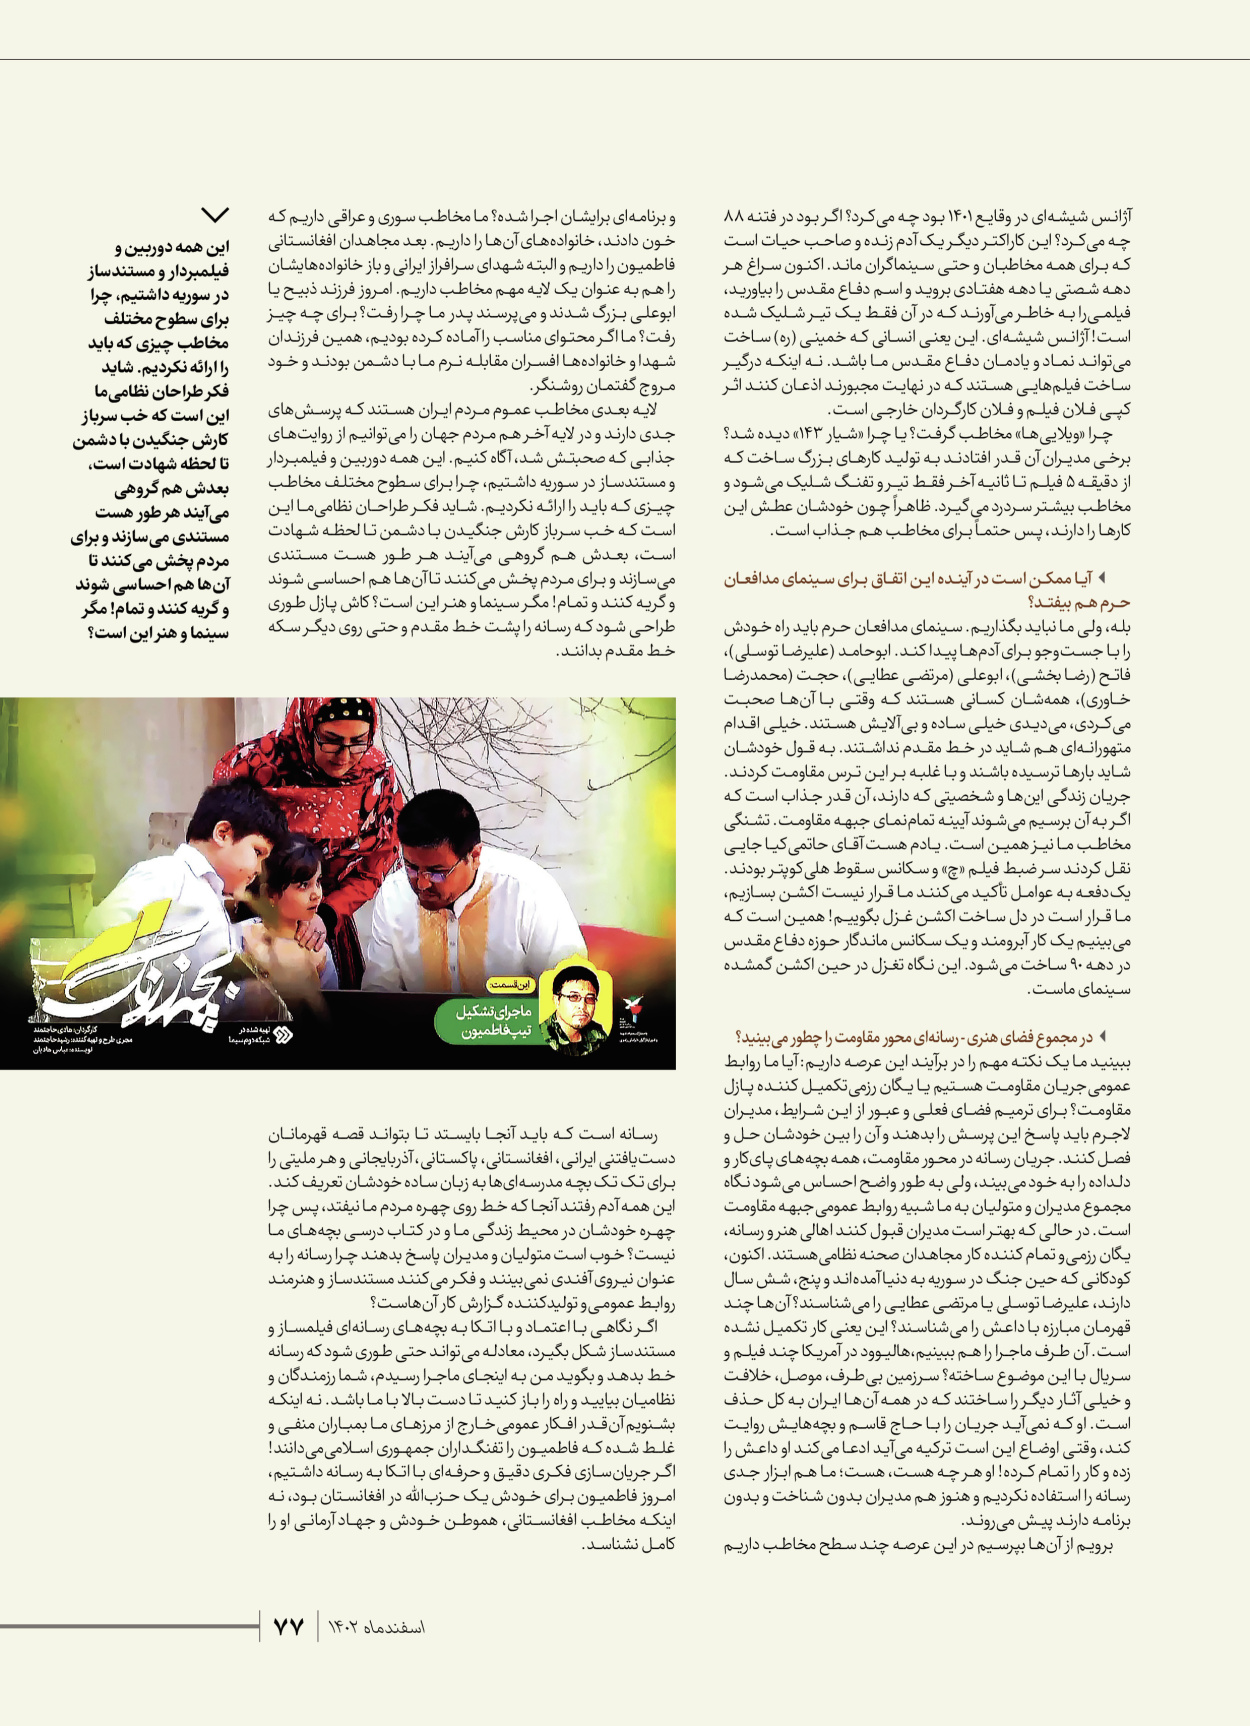 روزنامه ایران - ویژه نامه شهدای قدس ۵ - ۱۹ اسفند ۱۴۰۲ - صفحه ۷۷